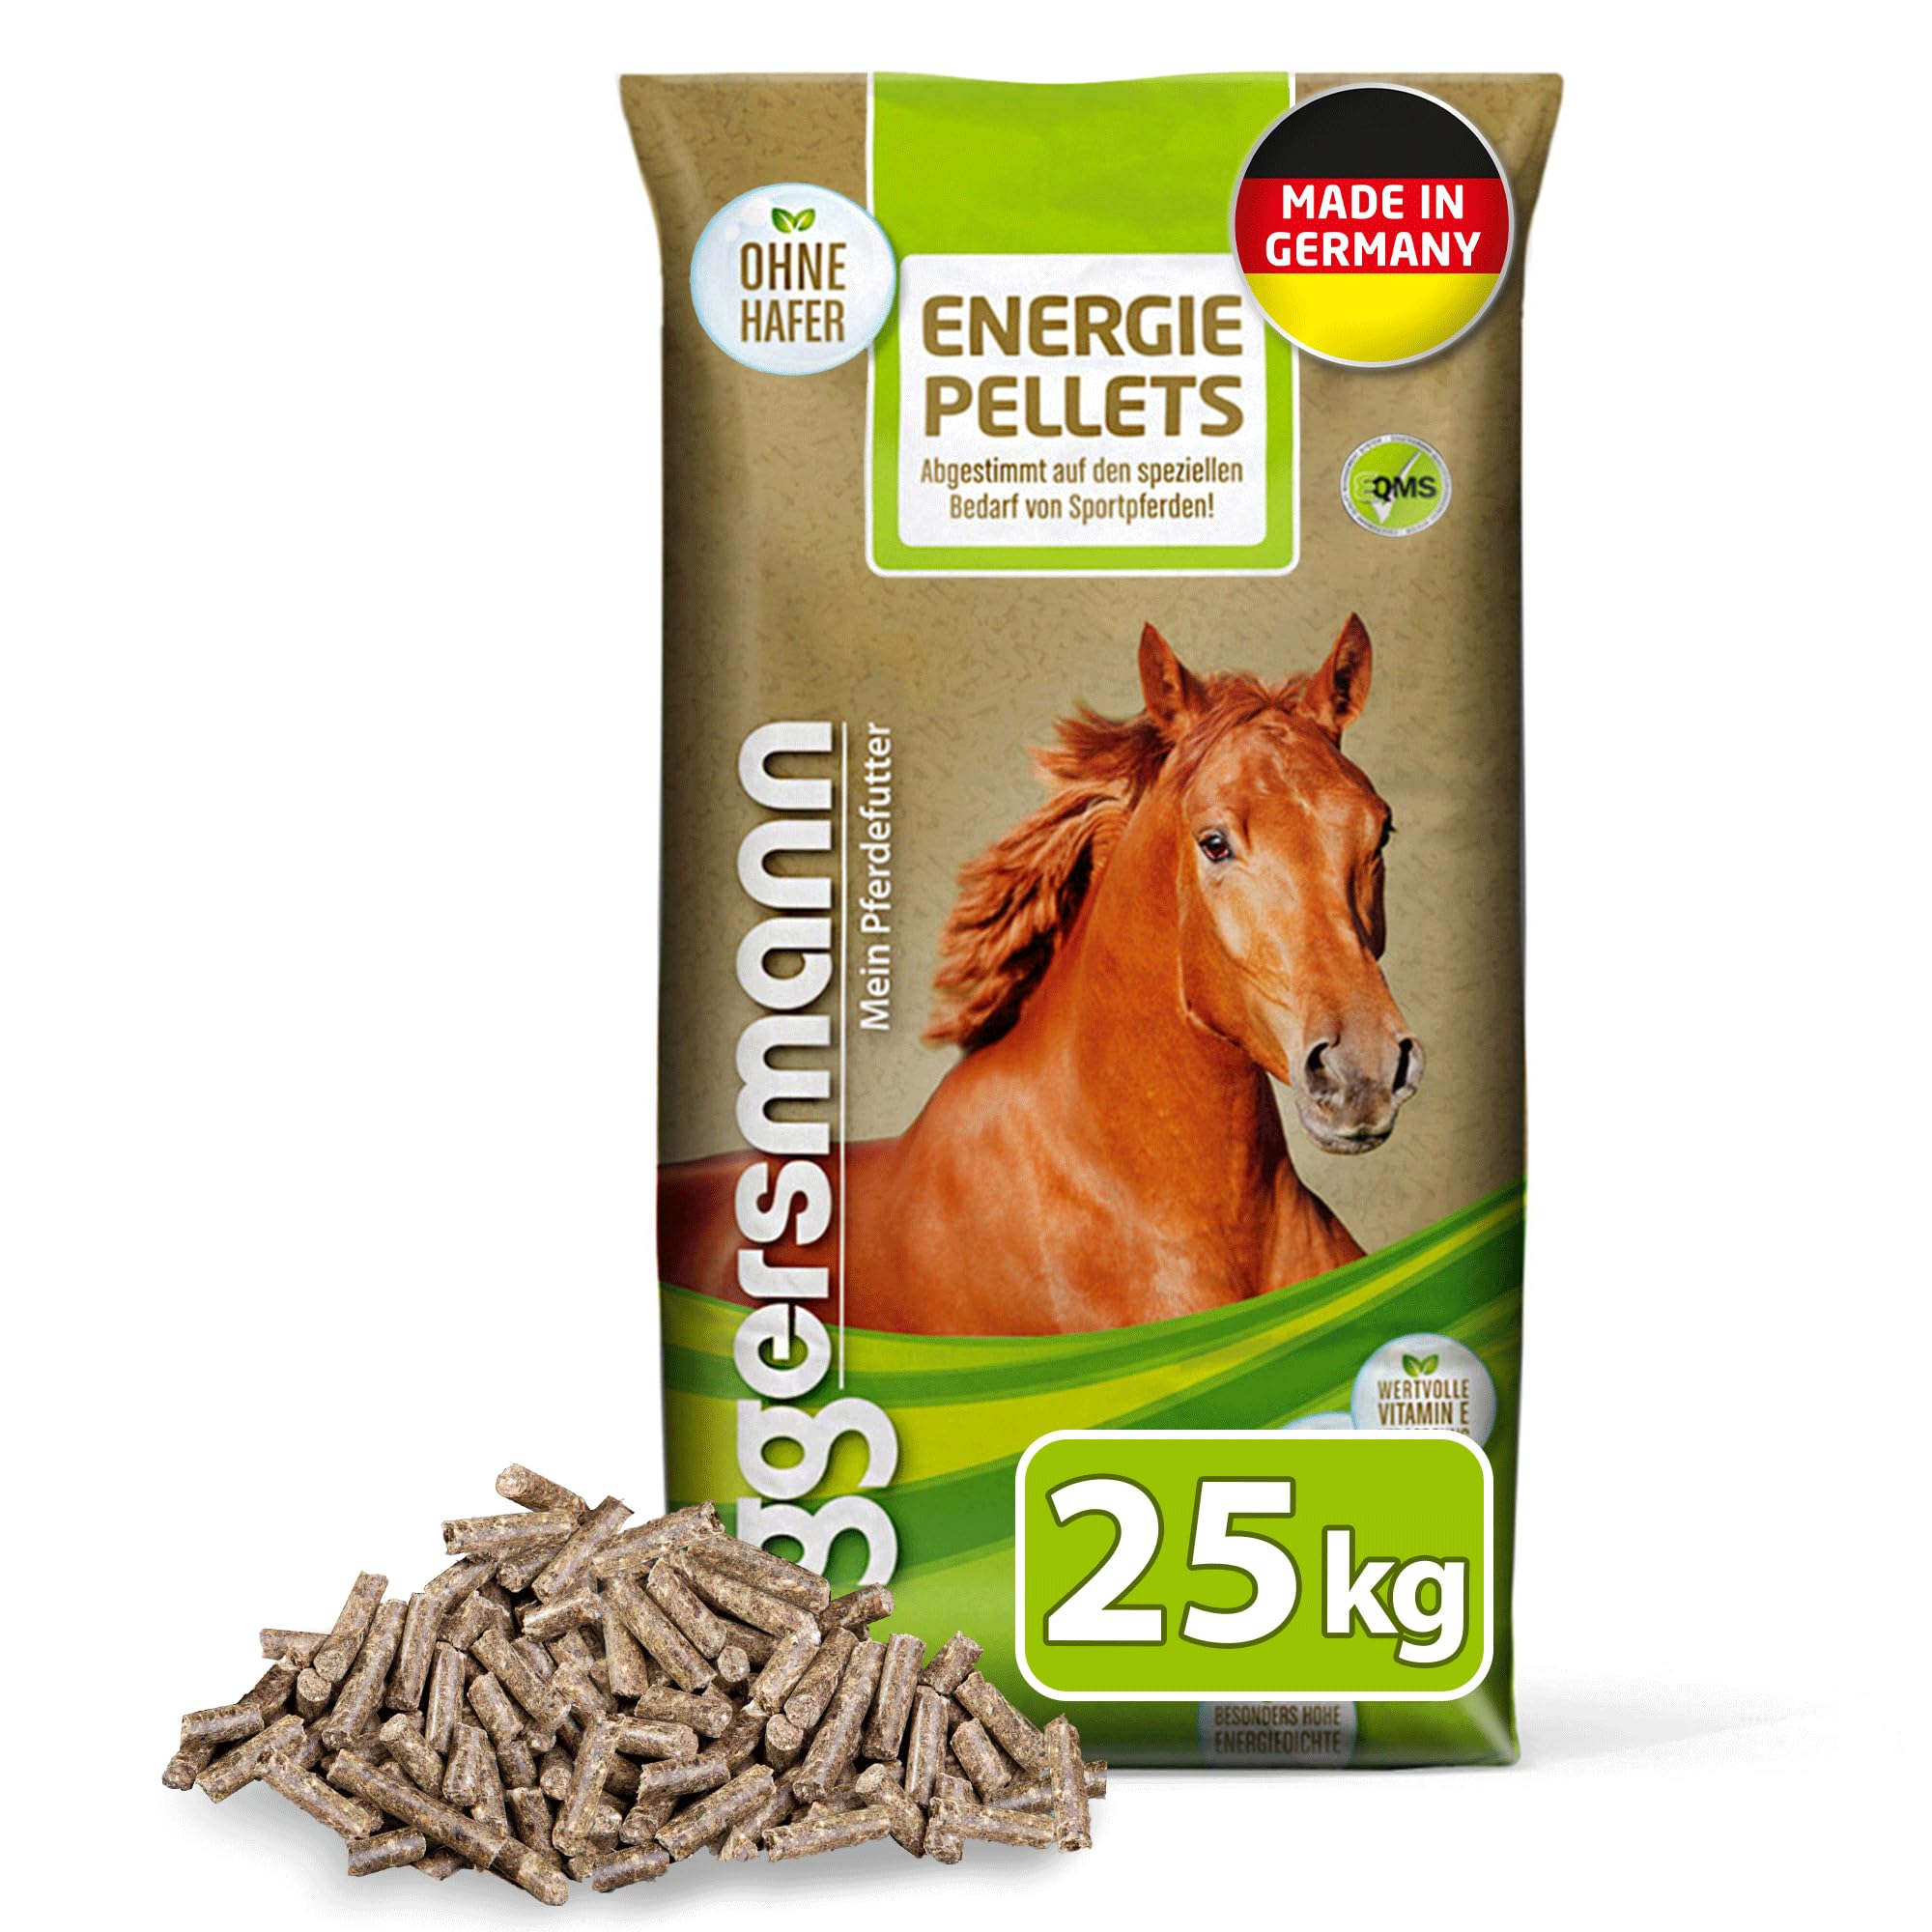 Eggersmann Mein Pferdefutter Energie Pellets 25 kg - Ergänzungsfuttermittel für Sportpferde - Pferdefutter Pellets mit Vitamin E & Aminosäuren unterstützt die Muskulatur & Ausdauer